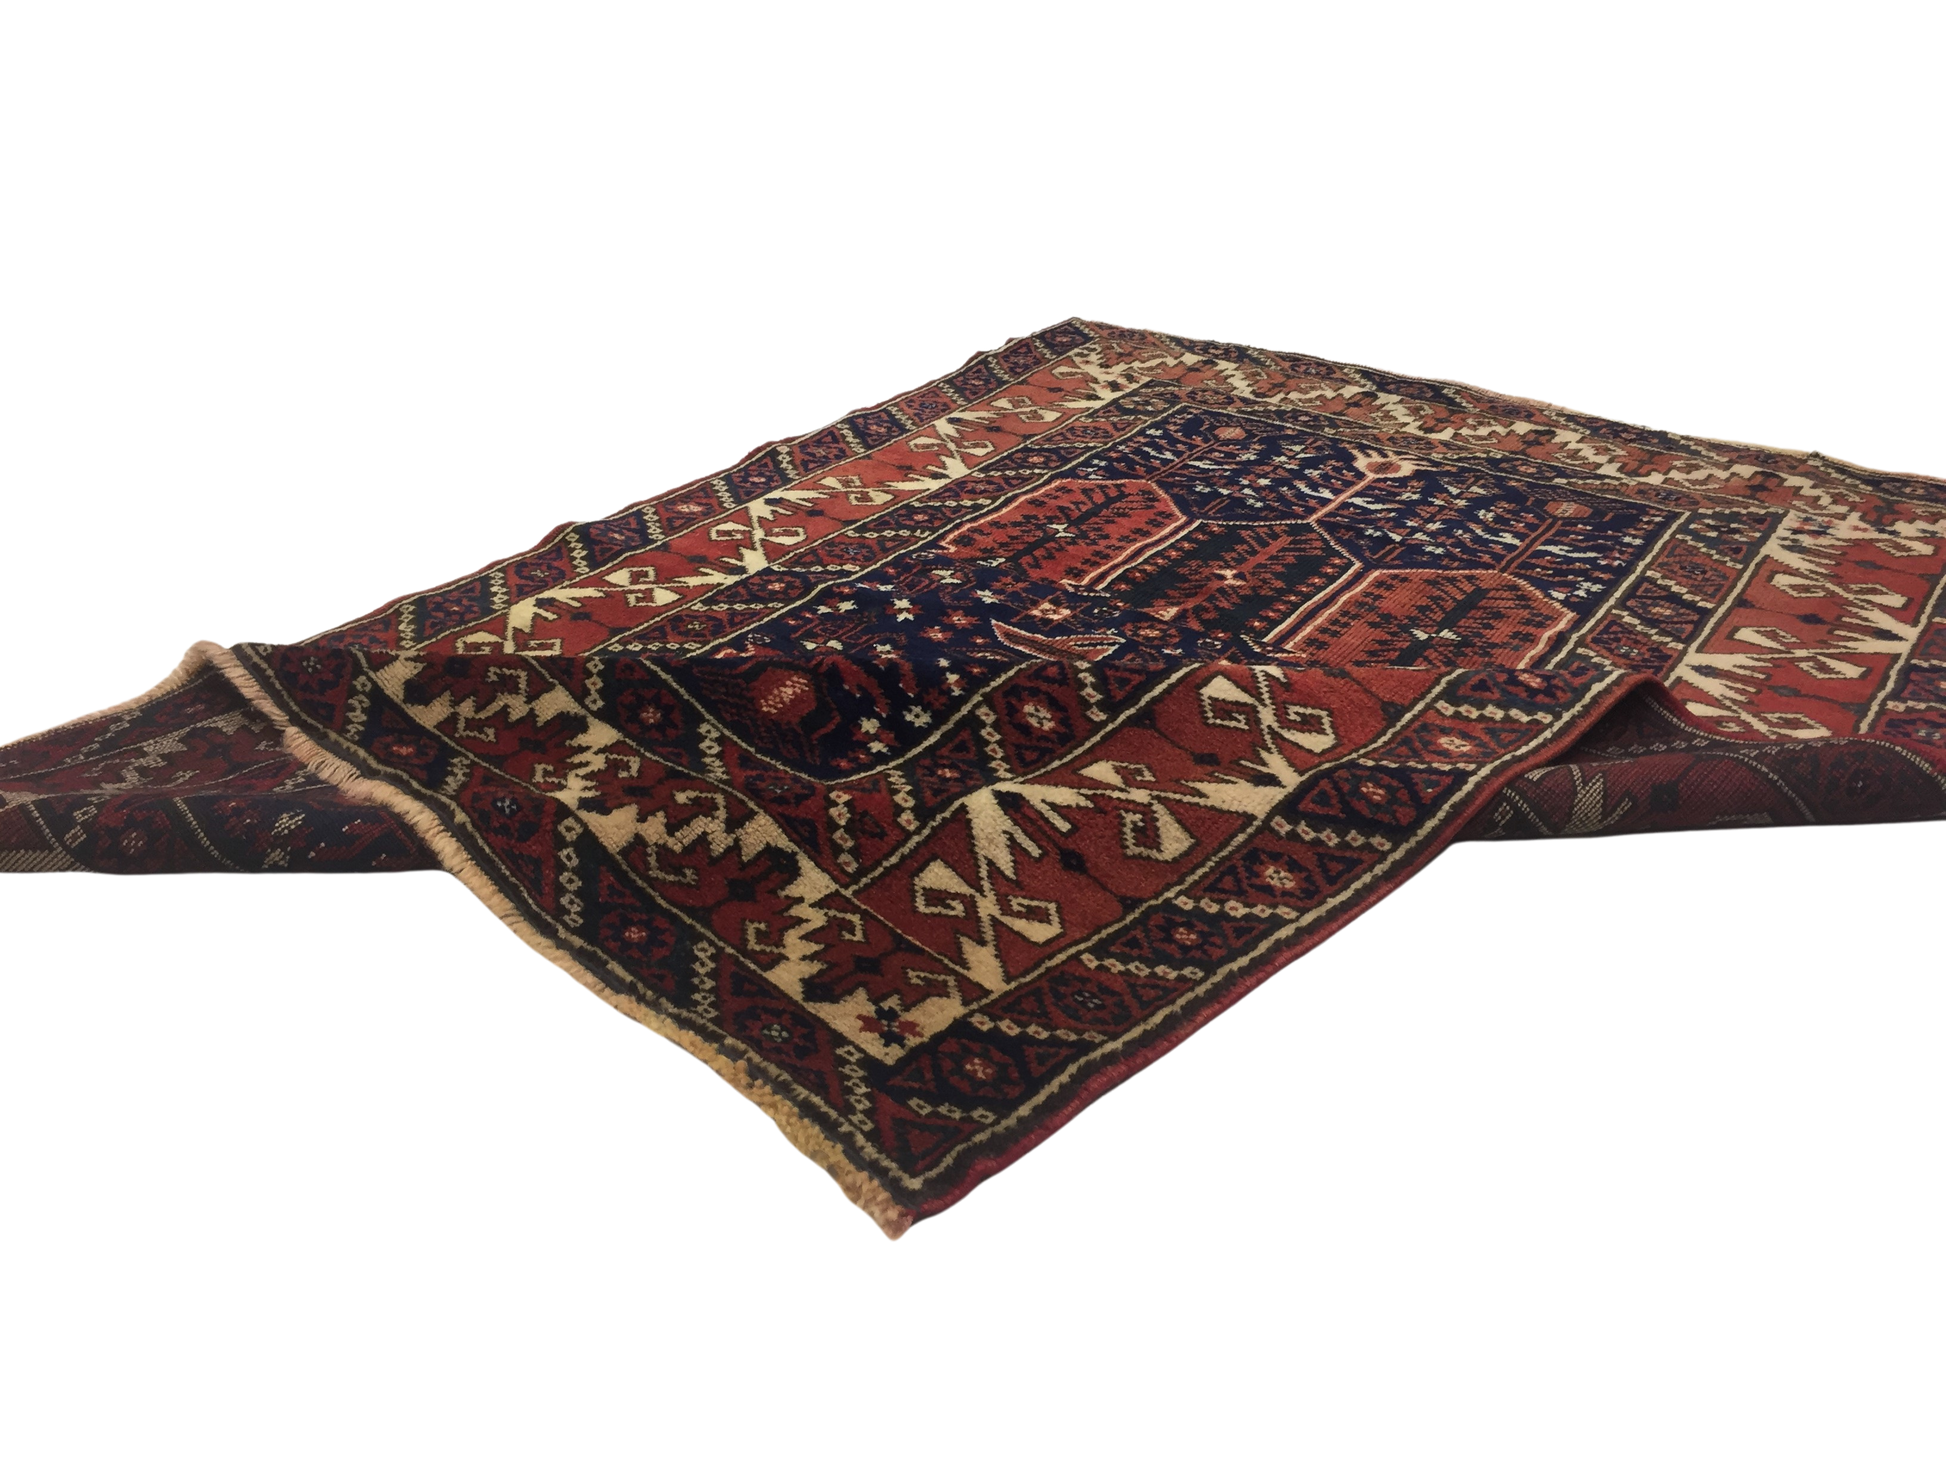 Classic Carpet 121 X 176 cm - Alfombras de Estambul -  Turkish Carpets - Alfombras de Estambul